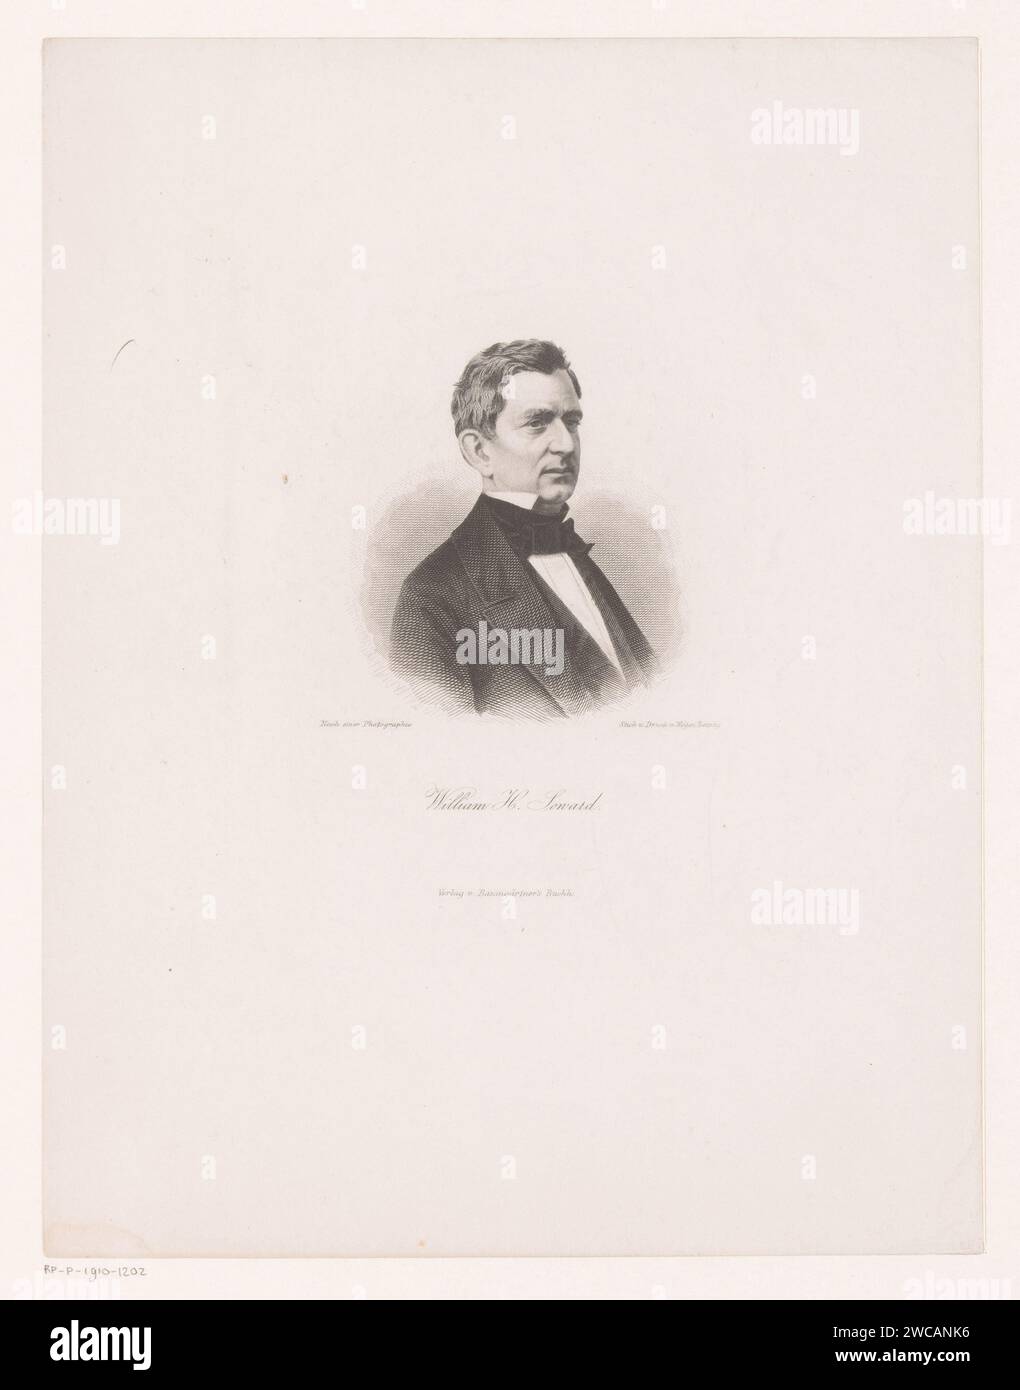 PortraT van William Henry Seward, August Weger, après Anonymous, 1849 - 1892 print Leipzig papier gravure sur acier personnages historiques Banque D'Images